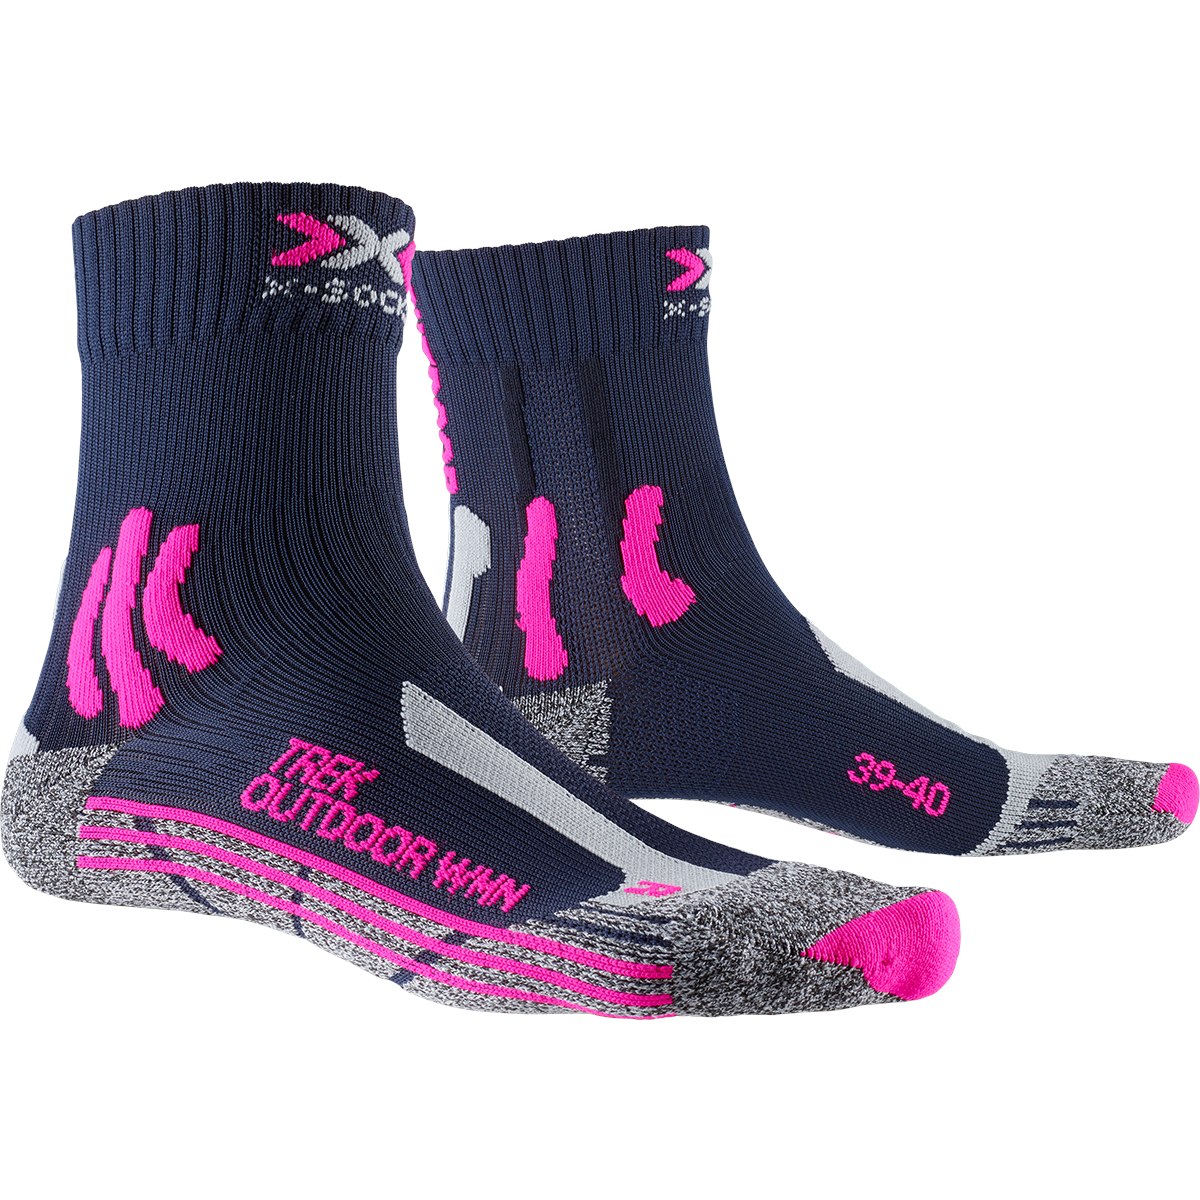 Produktbild von X-Socks Trek Outdoor Socken für Damen - midnight blue/pink/light grey melange